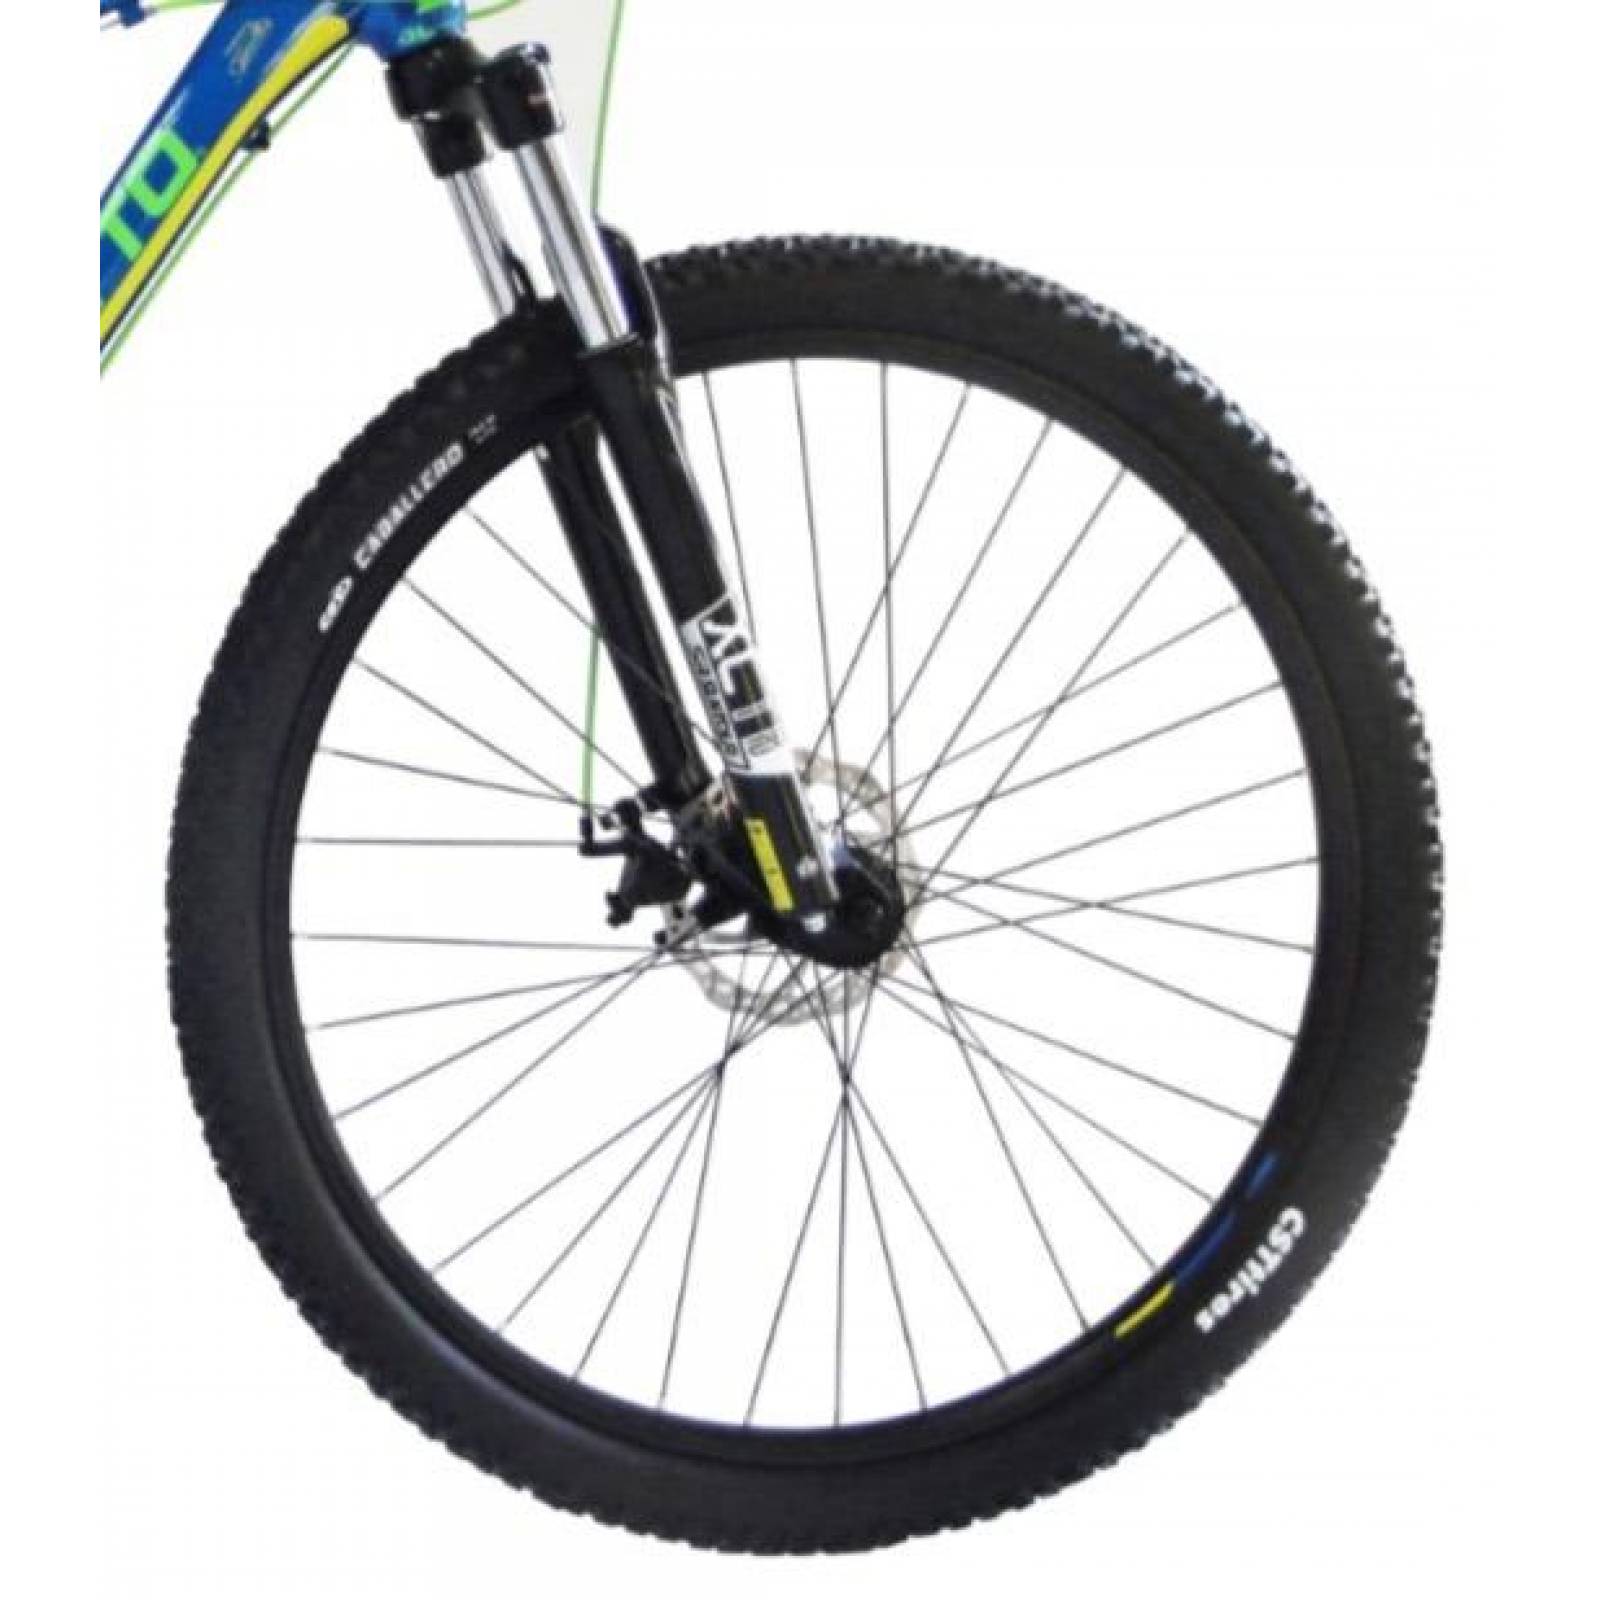 Bicicleta Benotto Montaña Fs-850 R29 24v Shimano Altus Dd Ml Azul